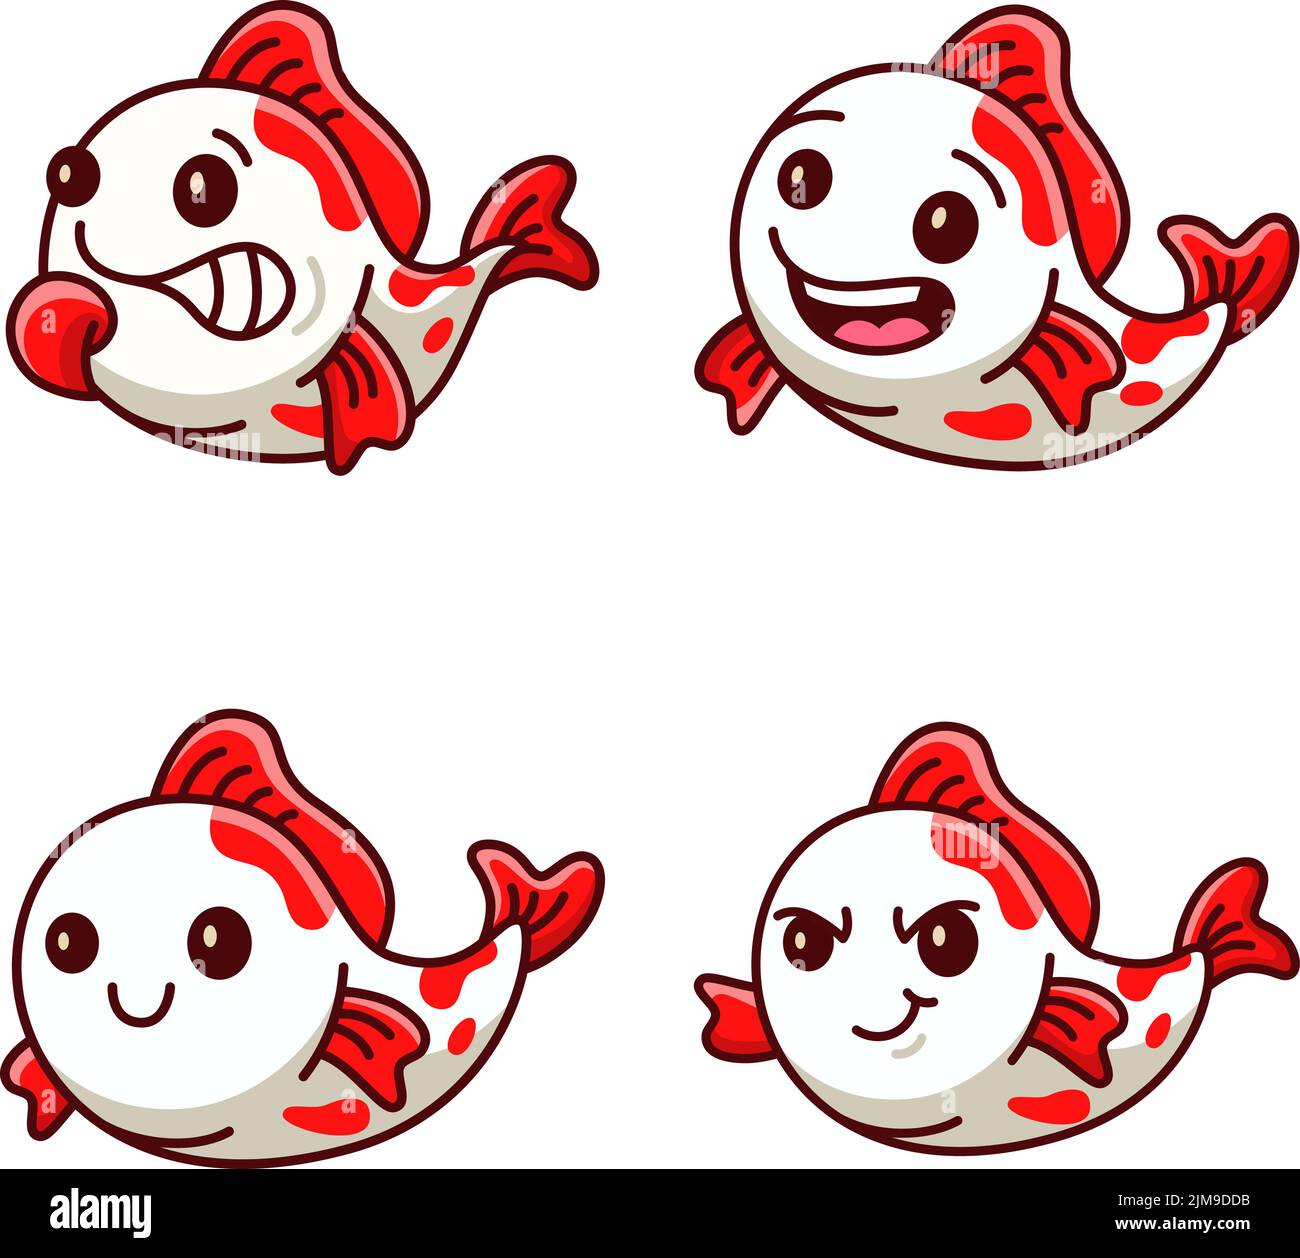 Collezione di simpatico personaggio di pesce koi che esprime emozioni diverse Illustrazione Vettoriale